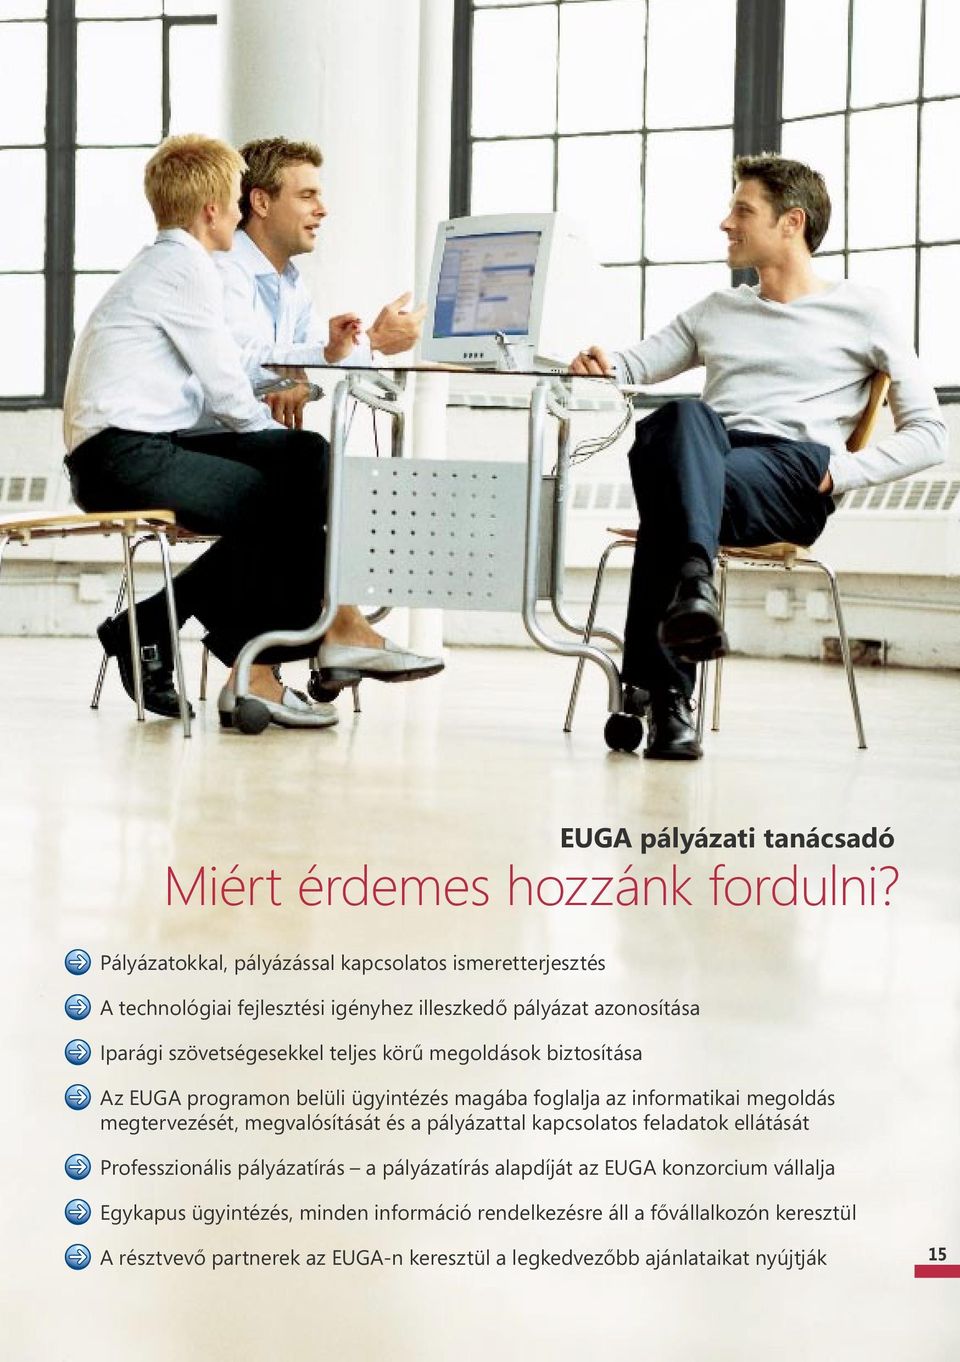 körű megoldások biztosítása Az EUGA programon belüli ügyintézés magába foglalja az informatikai megoldás megtervezését, megvalósítását és a pályázattal